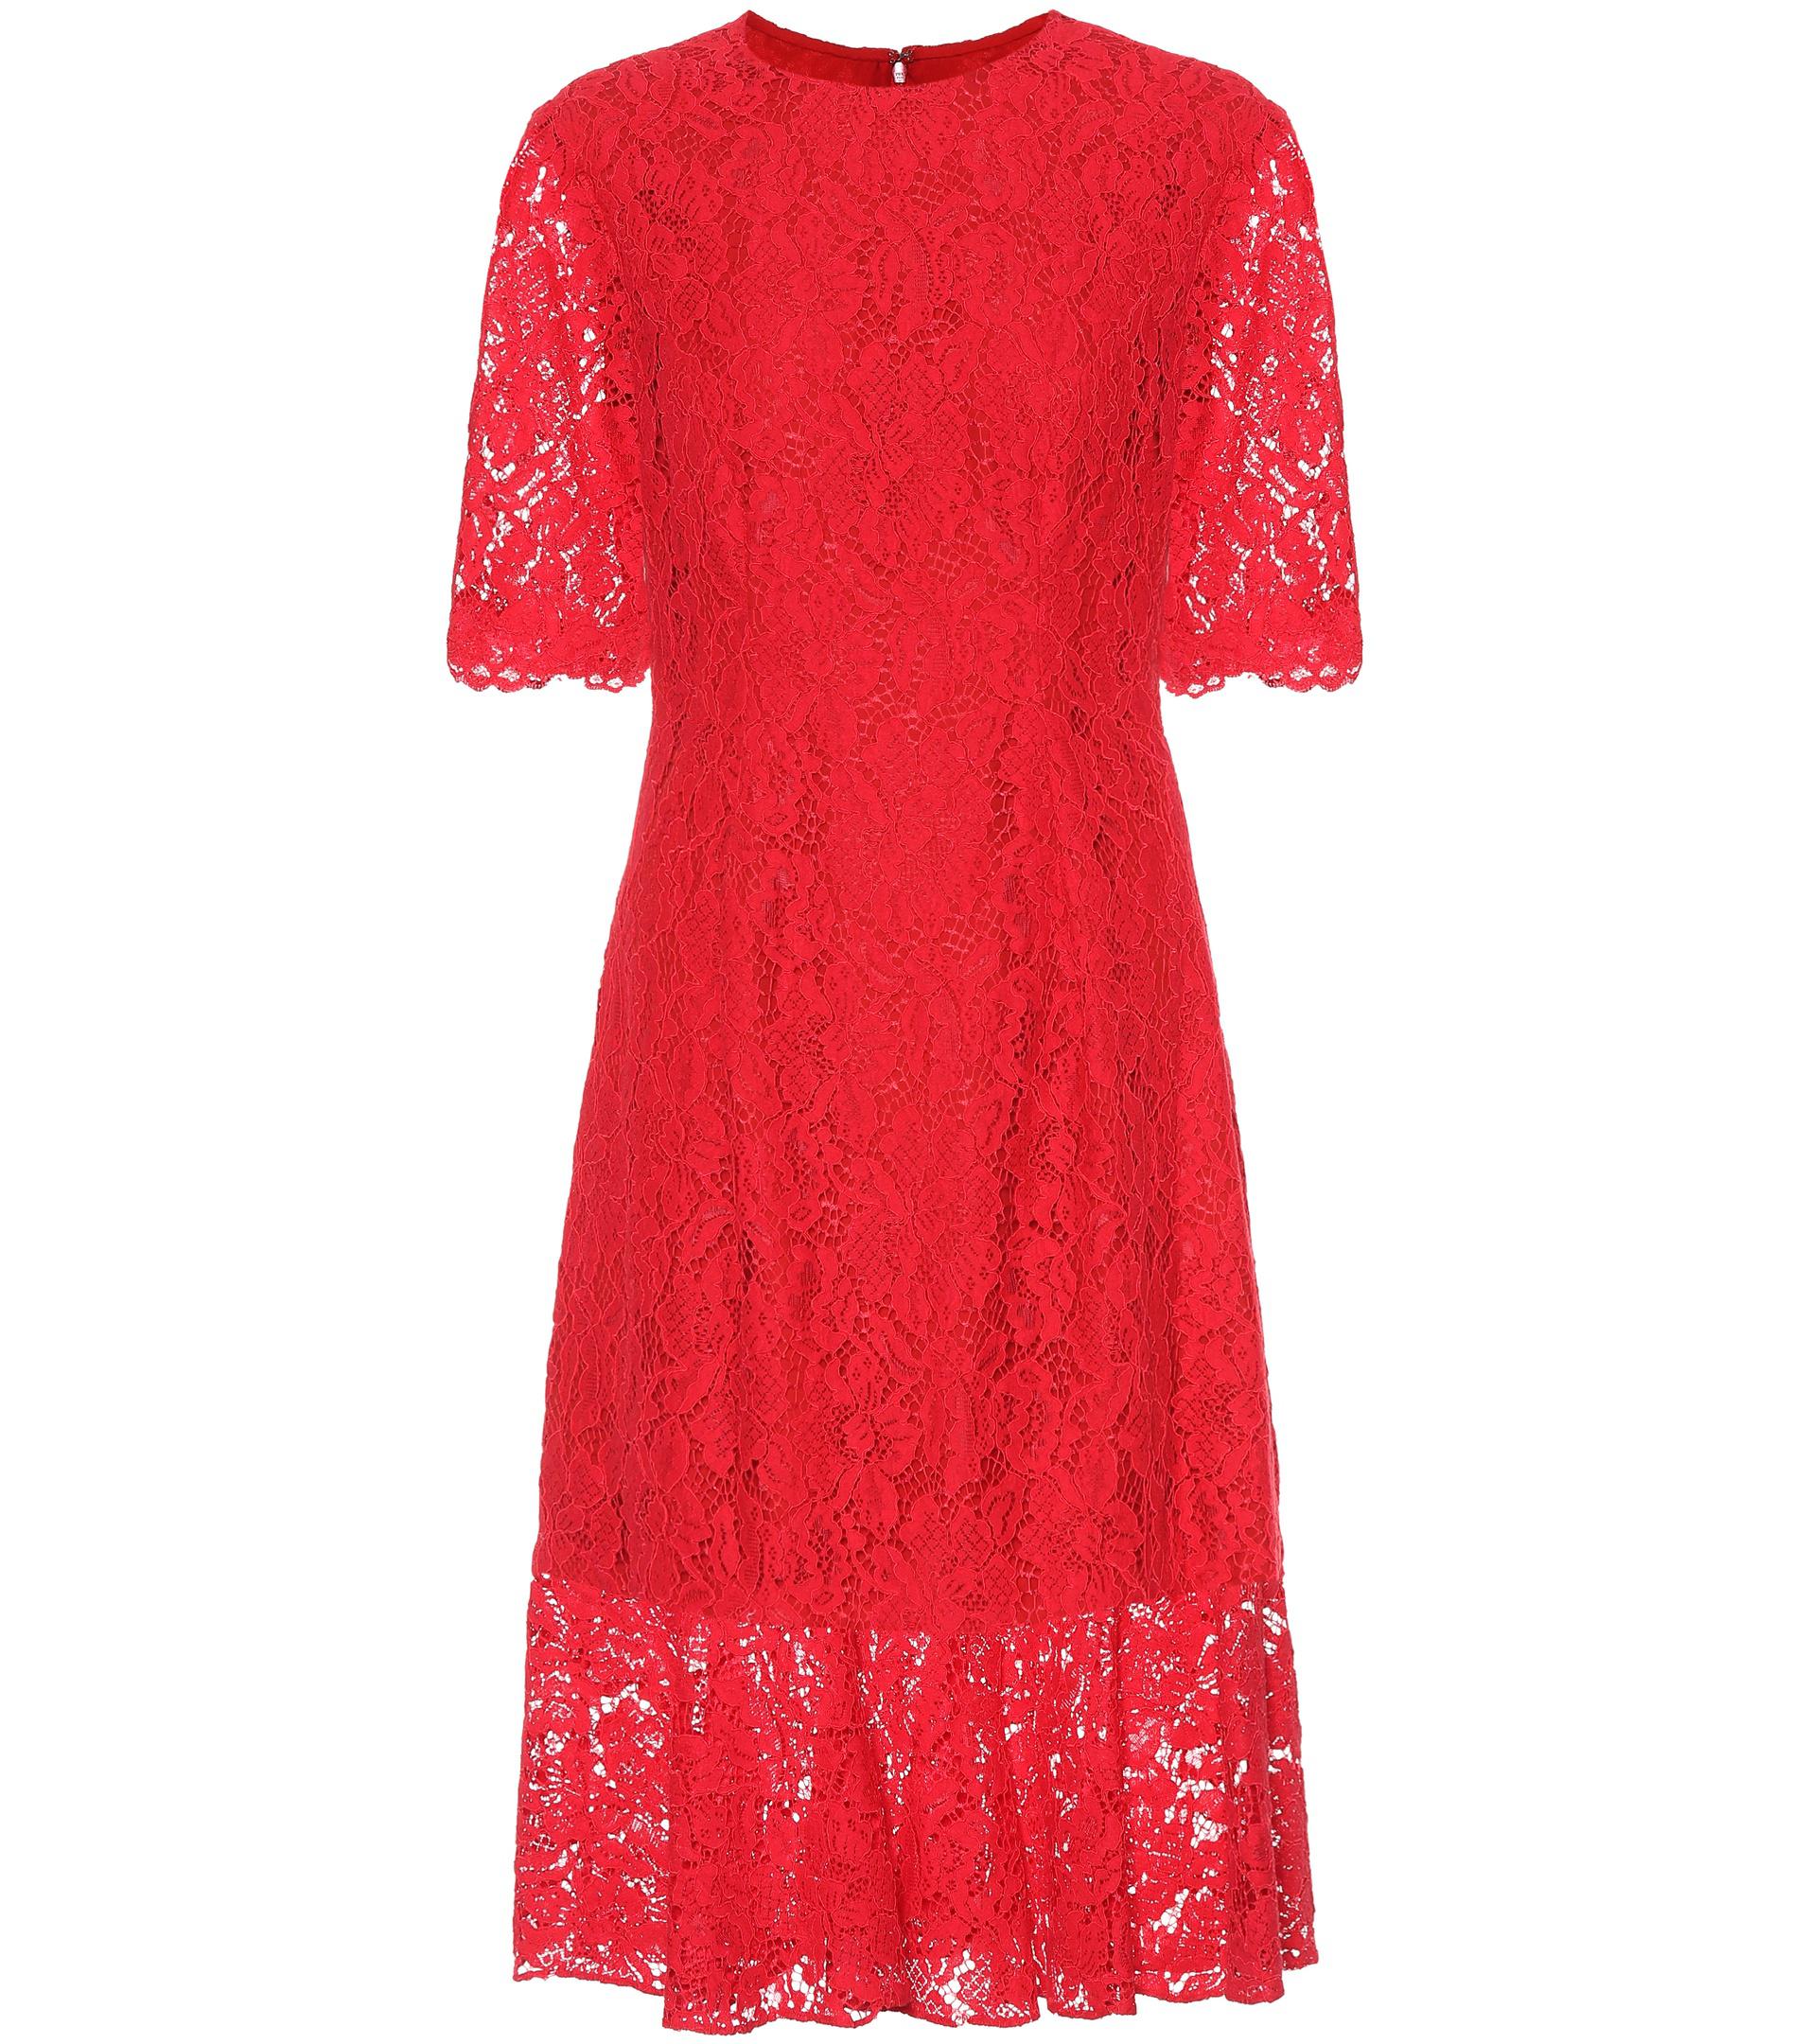 Carolina Herrera Longuette Lace Dress in Red - Lyst